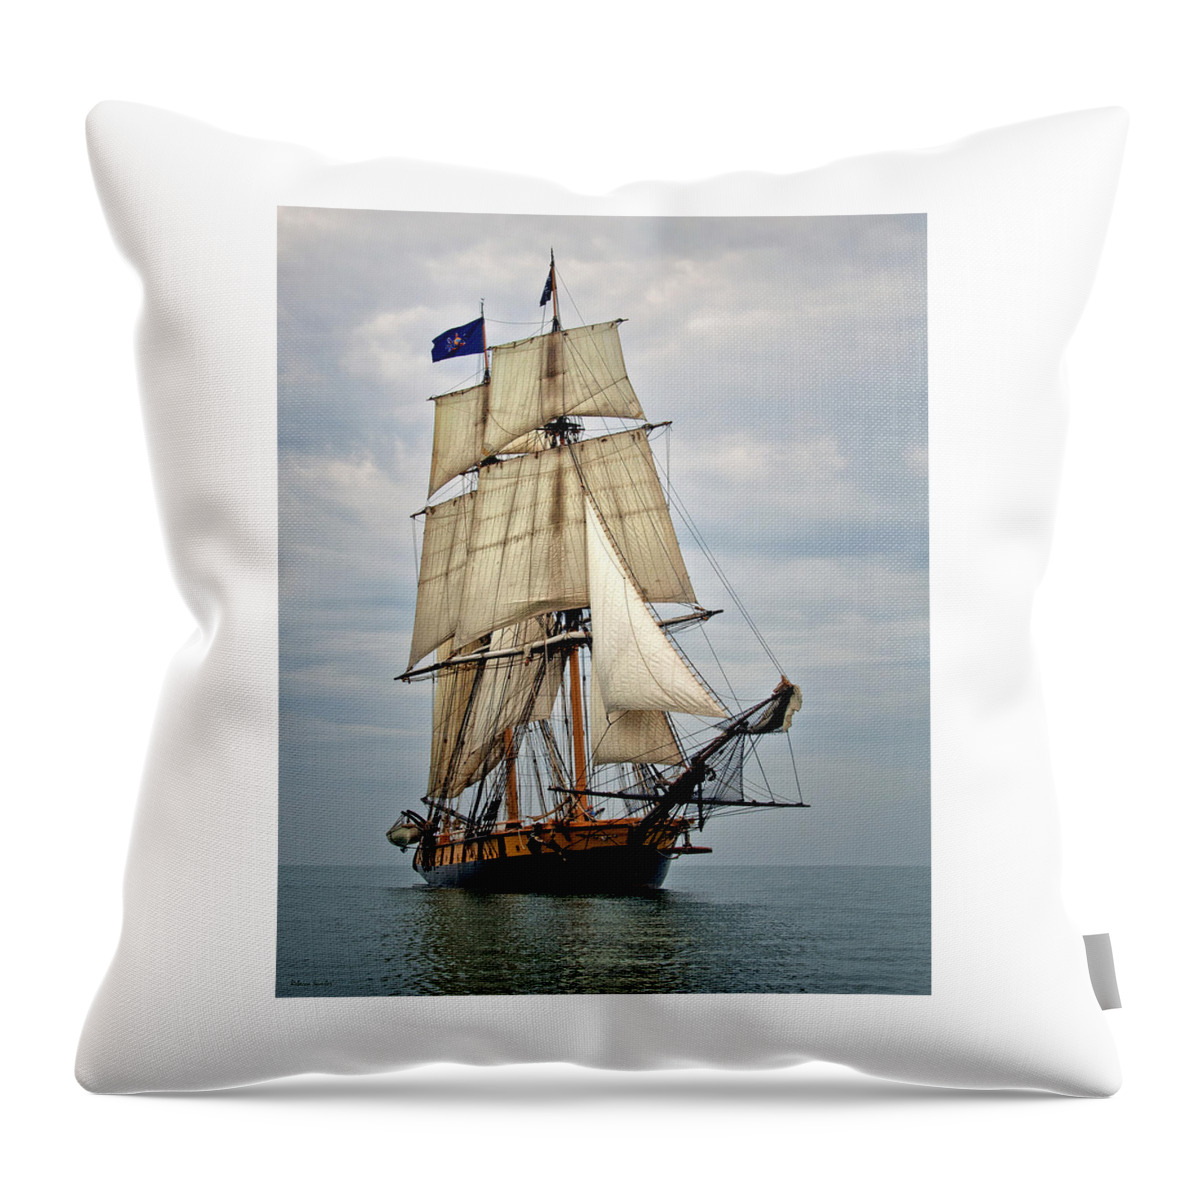 Boats Throw Pillow featuring the photograph Flagship Niagara by Rebecca Samler